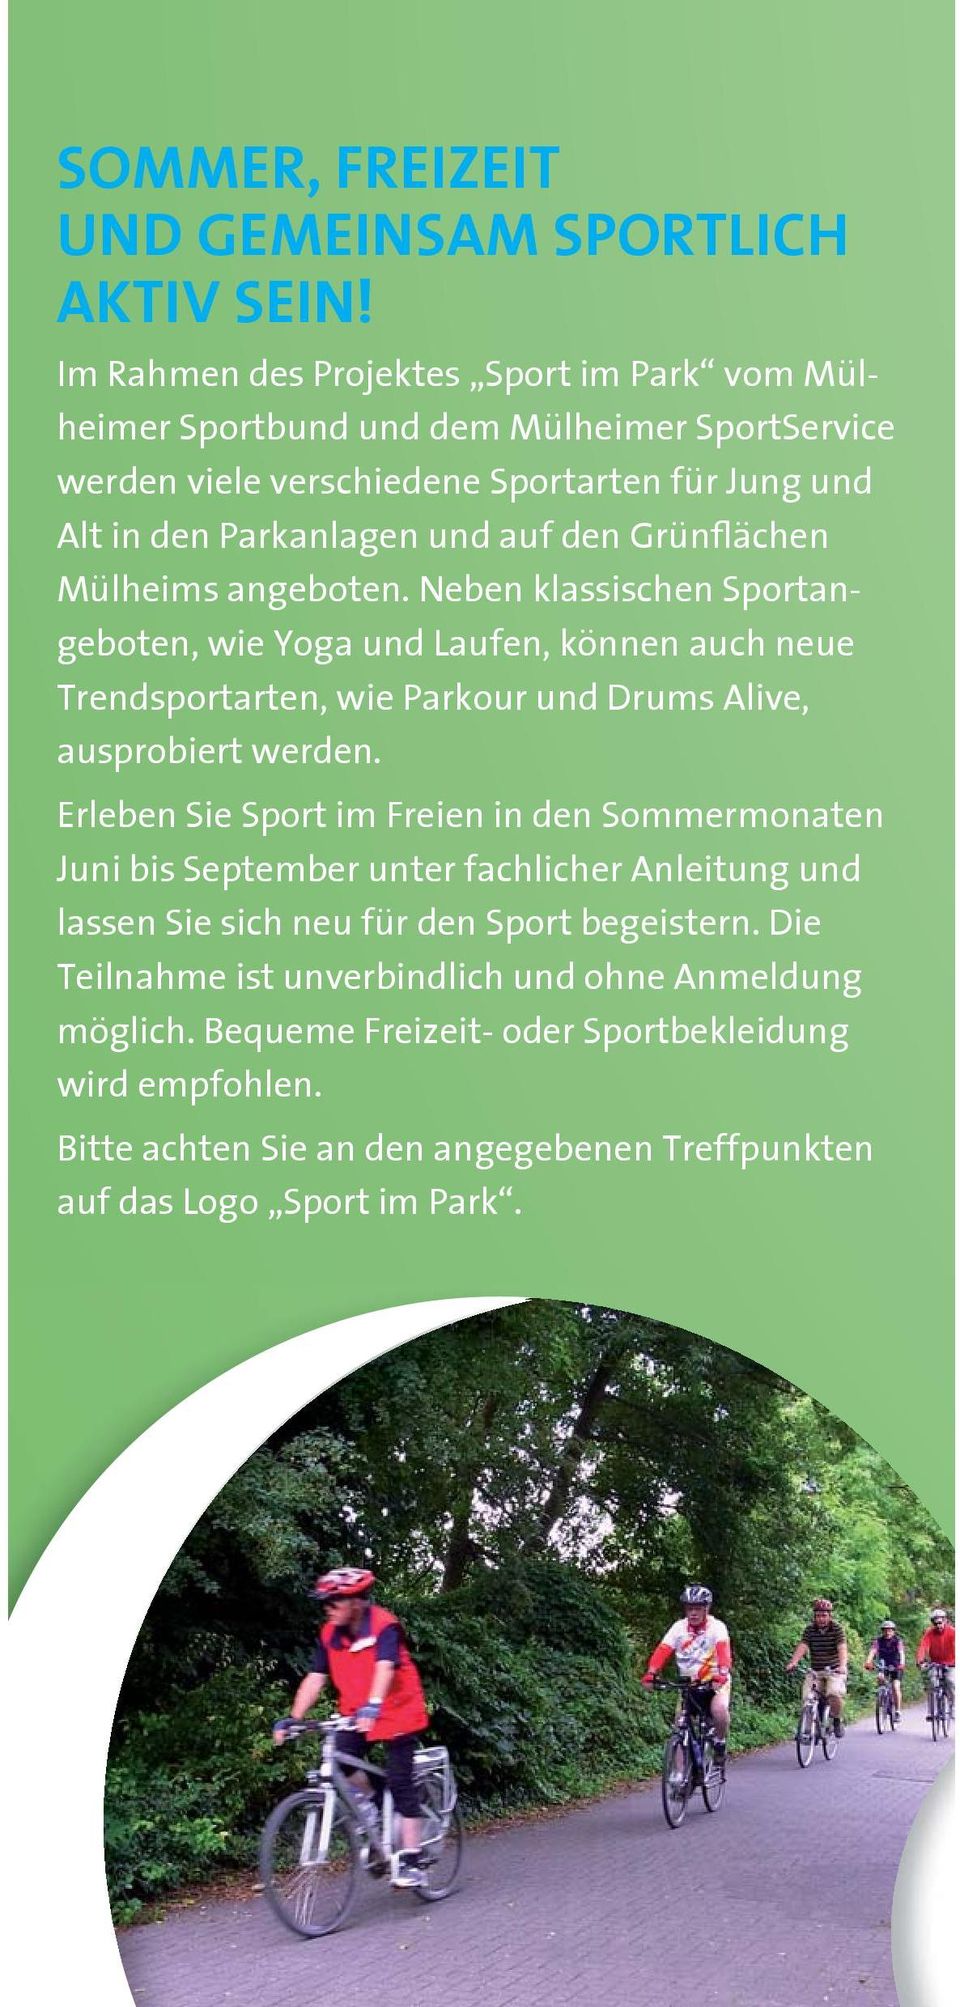 Grünflächen Mülheims angeboten. Neben klassischen Sportangeboten, wie Yoga und Laufen, können auch neue Trendsportarten, wie Parkour und Drums Alive, ausprobiert werden.